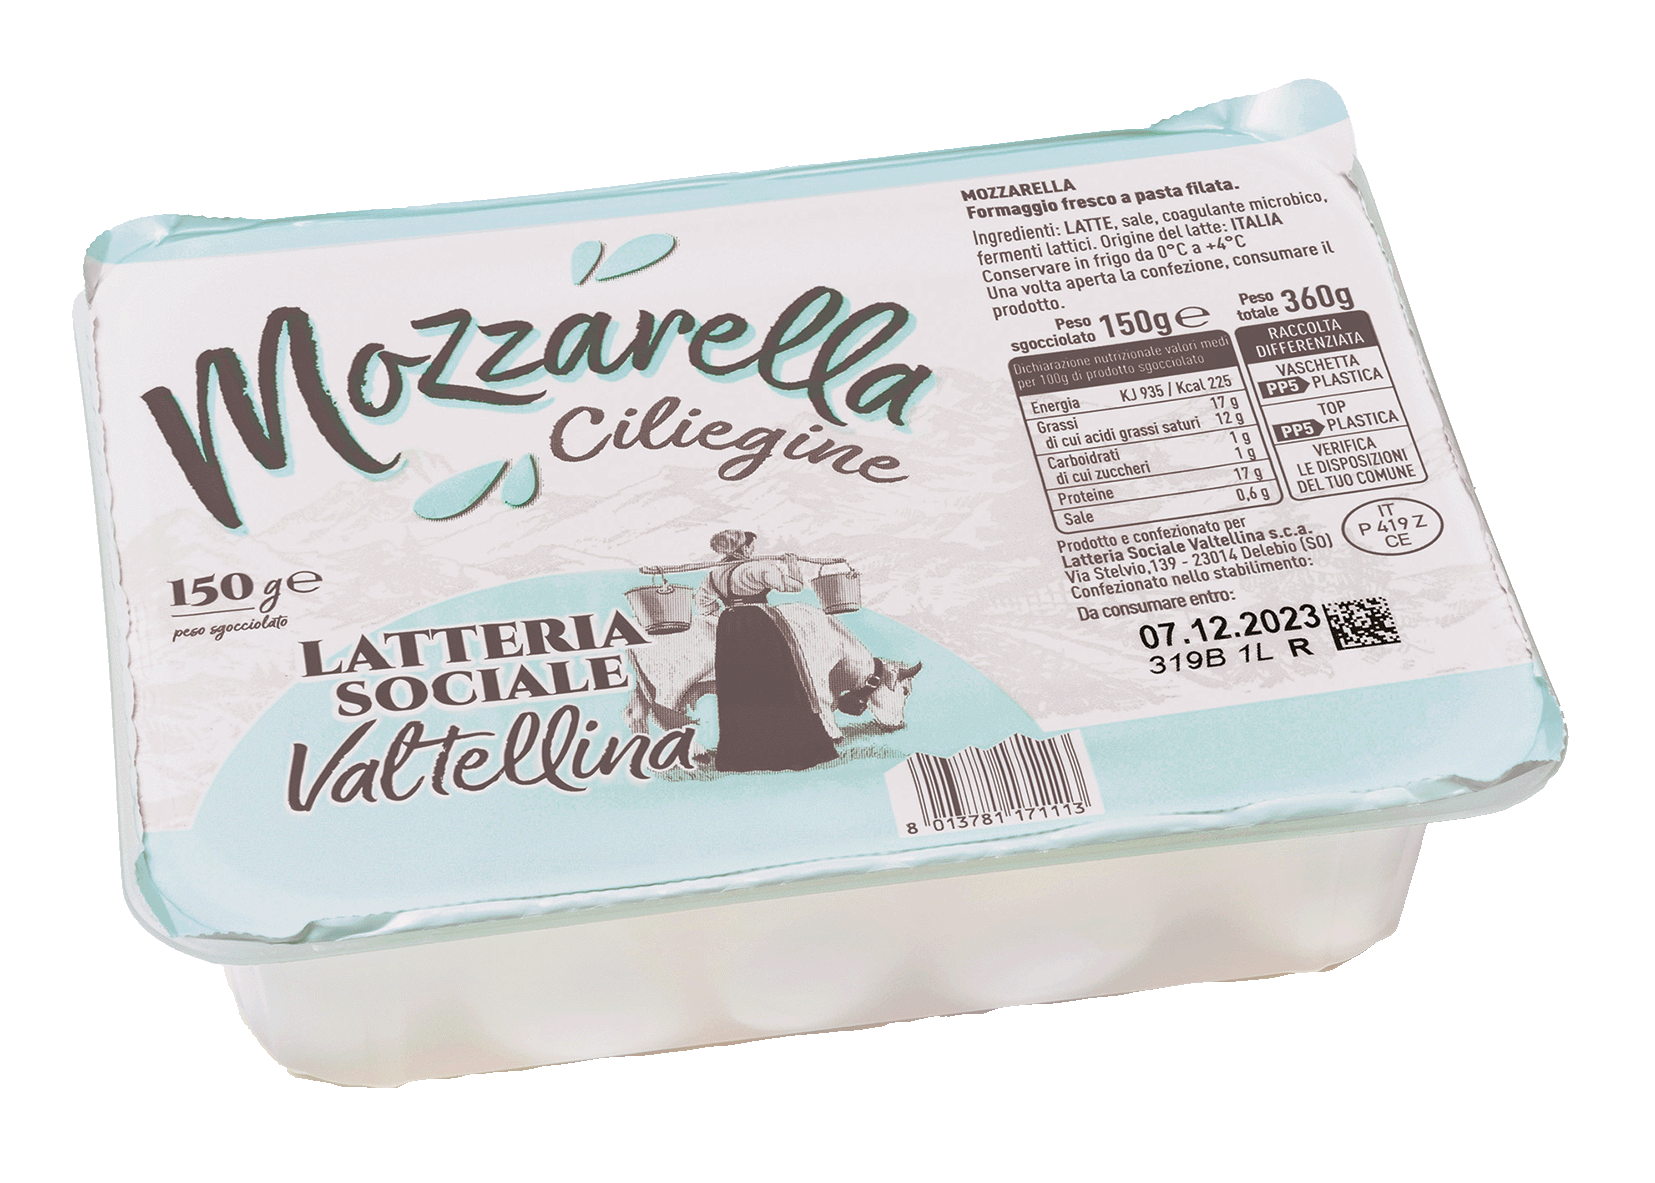 Mozzarella fior di latte della Valtellina - ciliegine